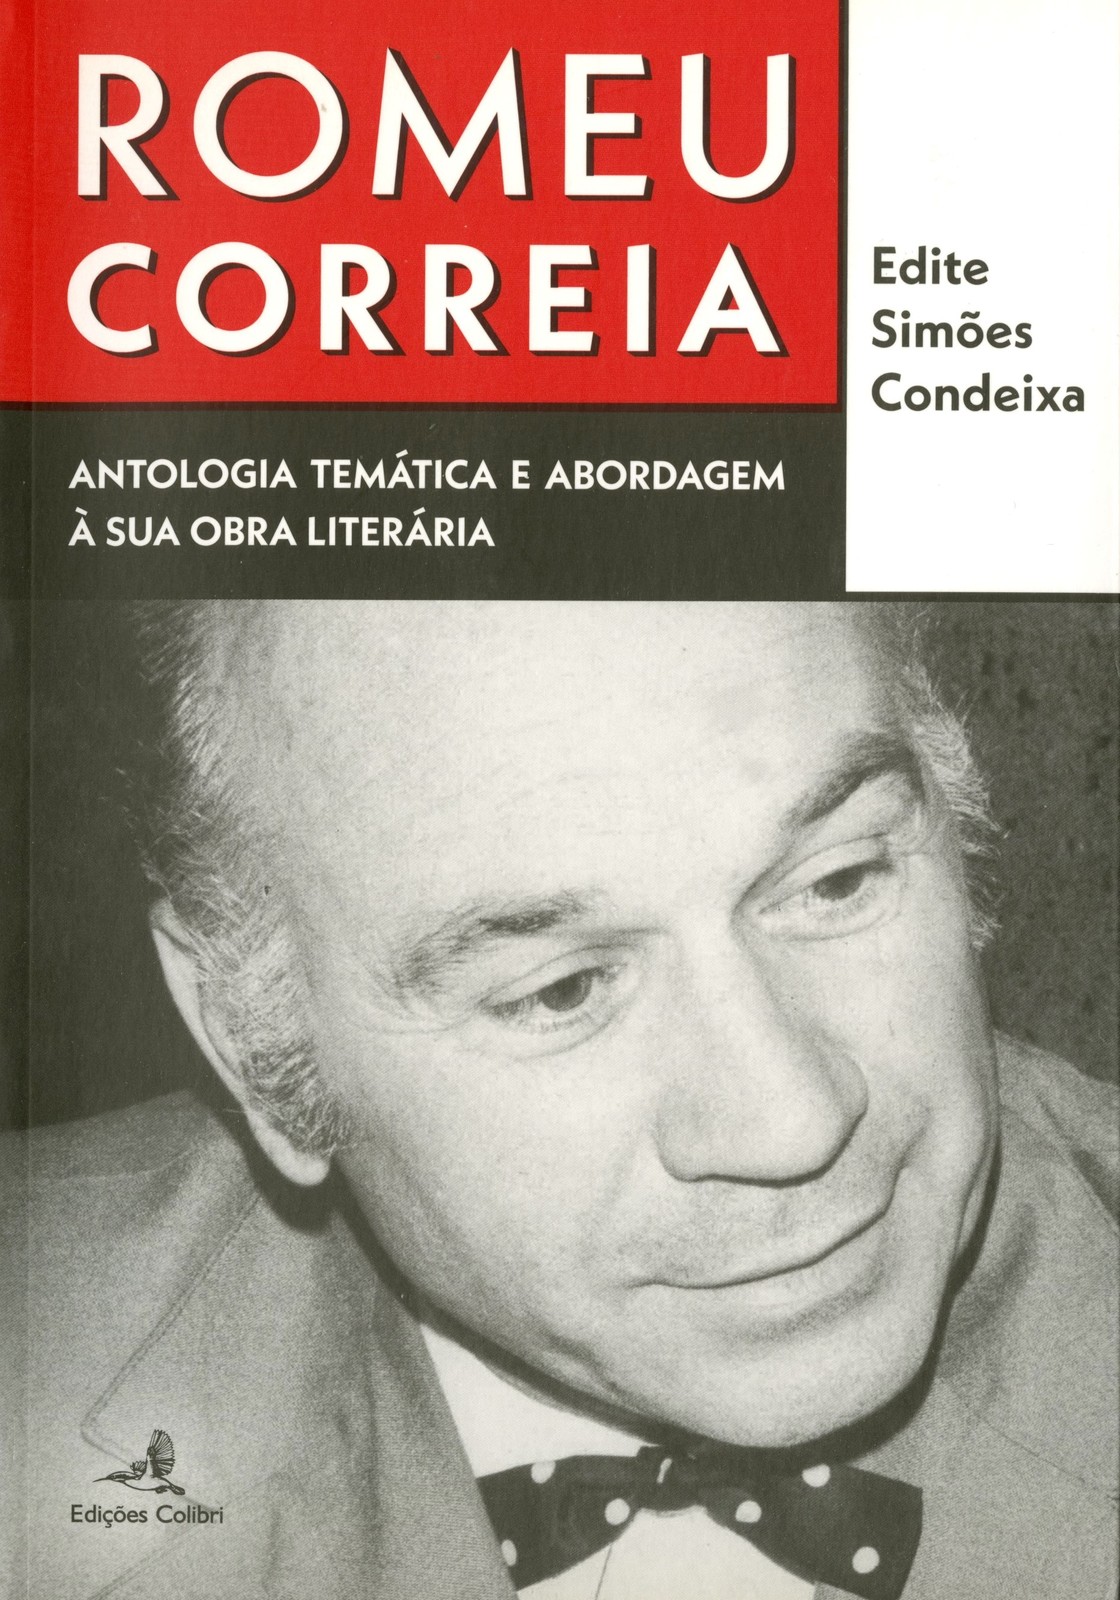 Edite Simões Condeixa - Romeu Correia, Antologia Temática e Abordagem à Sua Obra Literária